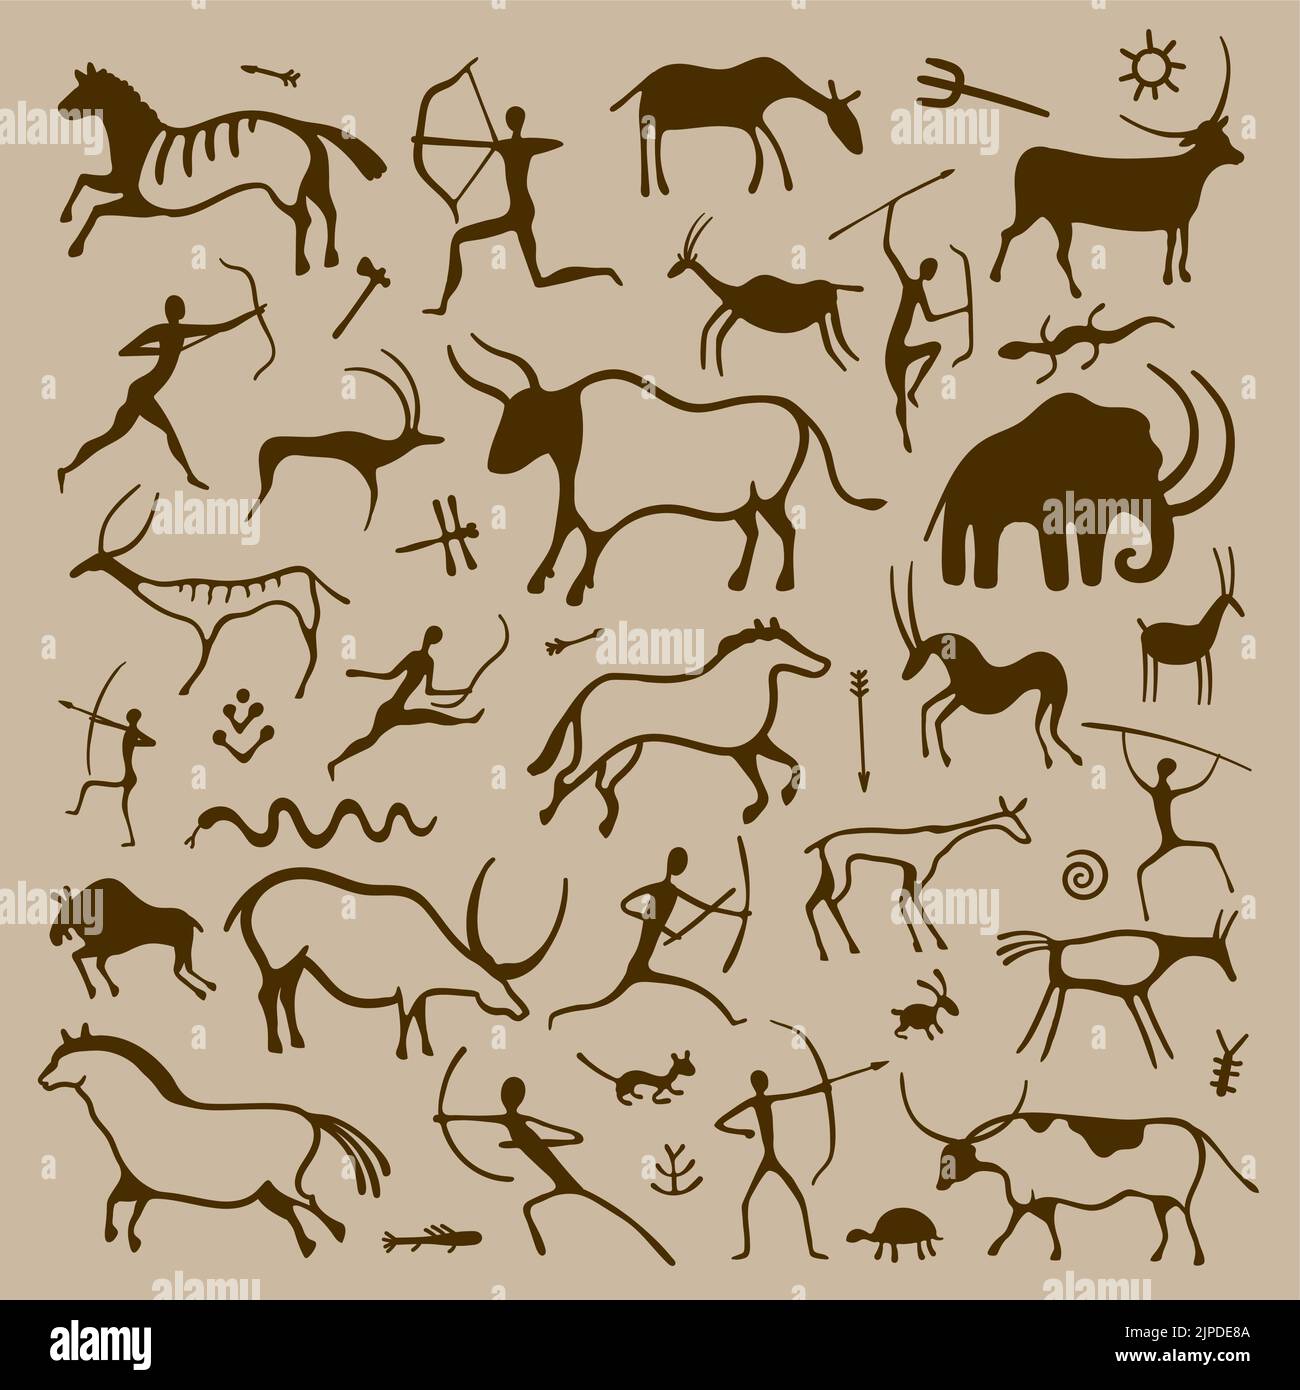 Höhlenkunst. Handgezeichnete primitive antike Symbole prähistorischer Jäger Tiere Pflanzen und Ornamente, Geschichte und Anthropologie Zeichnung. Vektor isoliert Stock Vektor